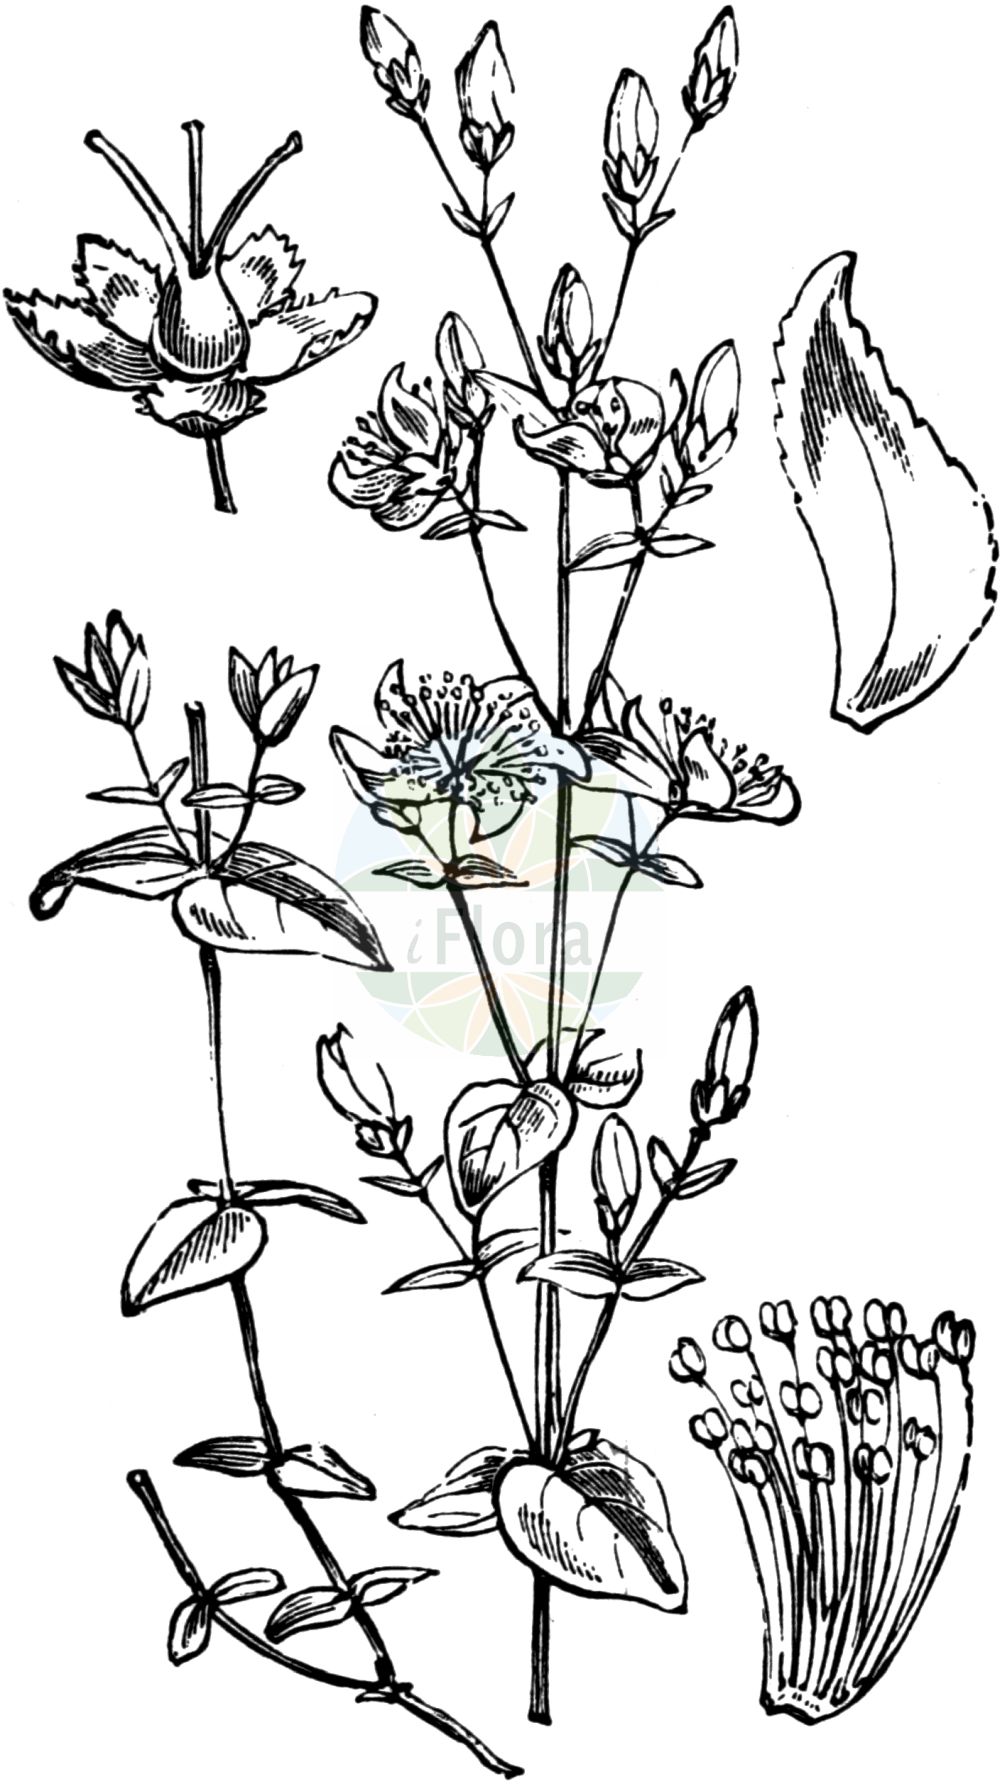 Historische Abbildung von Hypericum pulchrum (Schönes Johanniskraut - Slender St John's-wort). Das Bild zeigt Blatt, Bluete, Frucht und Same. ---- Historical Drawing of Hypericum pulchrum (Schönes Johanniskraut - Slender St John's-wort). The image is showing leaf, flower, fruit and seed.(Hypericum pulchrum,Schönes Johanniskraut,Slender St John's-wort,Hypericum pulchrum,Schoenes Johanniskraut,Heide-Johanniskraut,Slender St John's-wort,Elegant St John's-wort,Hypericum,Johanniskraut,St. John's Wort,Hypericaceae,Hartheugewächse,St. John's Wort family,Blatt,Bluete,Frucht,Same,leaf,flower,fruit,seed,Fitch et al. (1880))